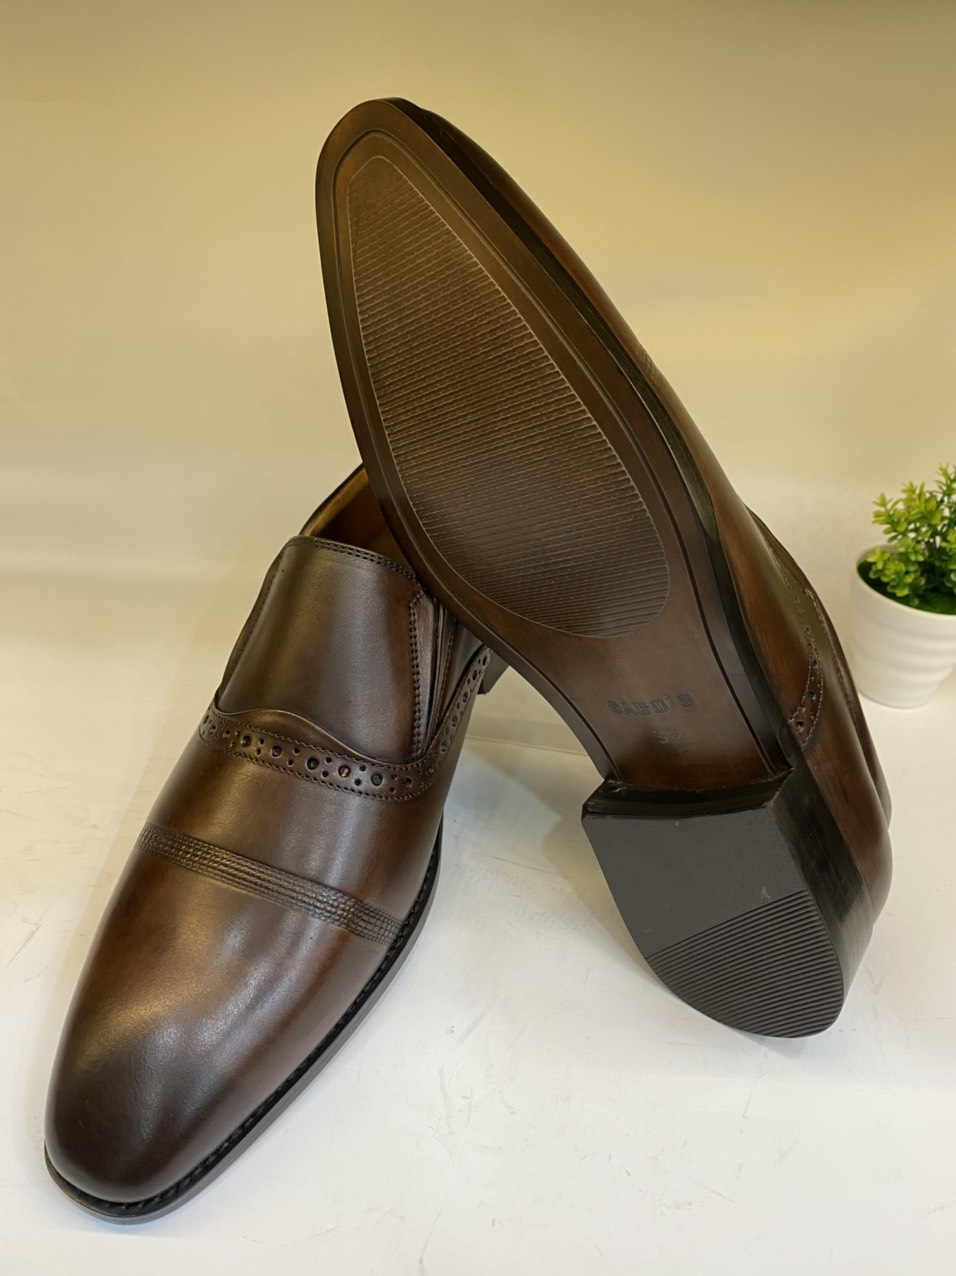 Giày Công Sở Nam Da Bò Màu Nâu-P30 Giày Tây Nam- Giày Đánh Patina Thủ Công Sang Trọng Lịch Lãm Giày SAGO’S